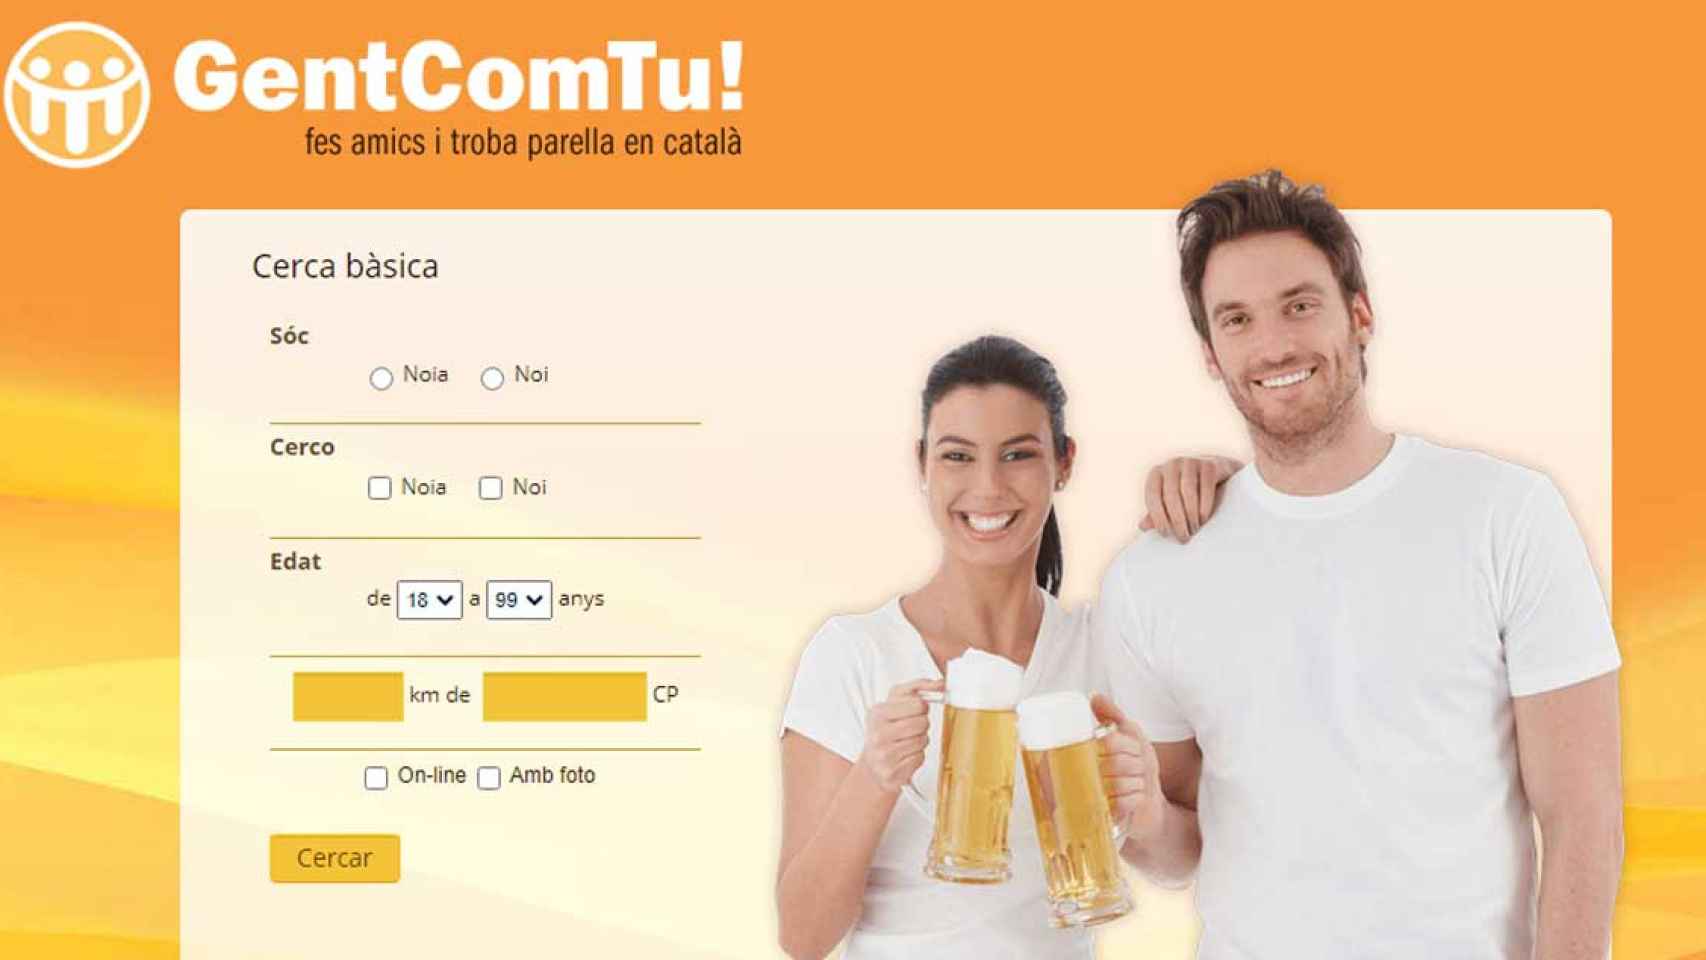 Página principal de la web 'Gent com Tu!' / GENTCOMTU.COM